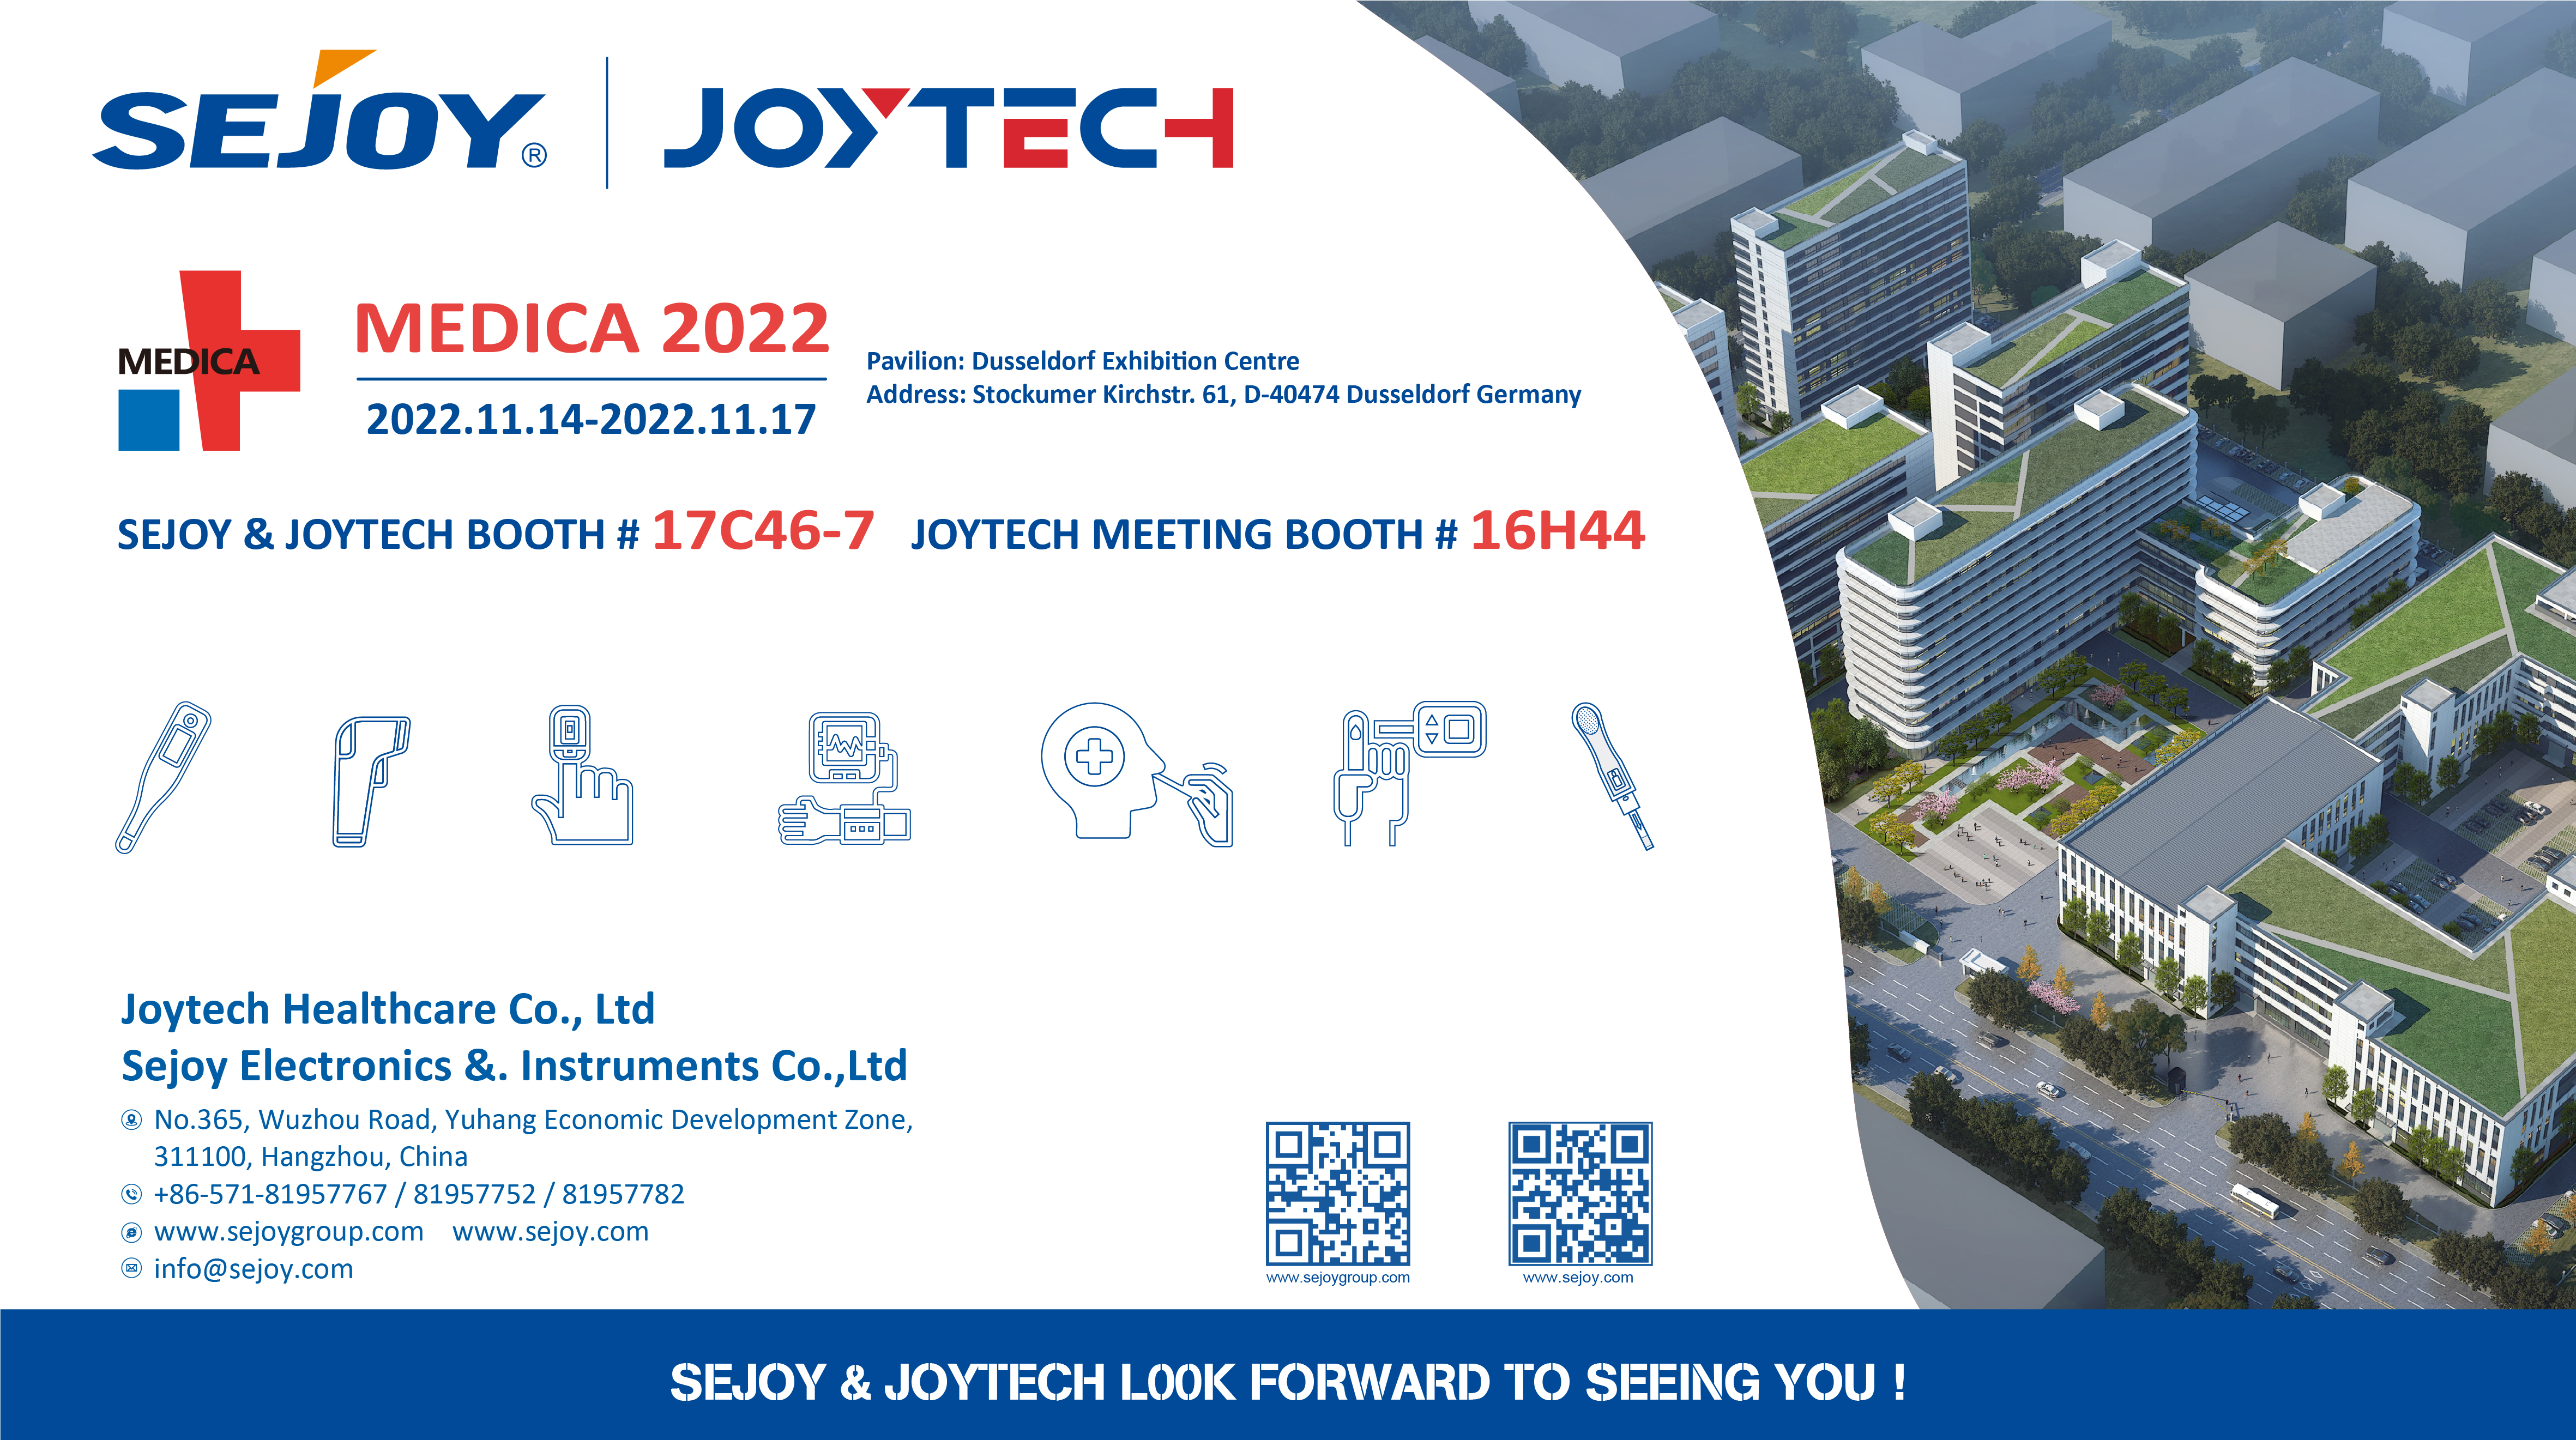 ຕົວຢ່າງງານວາງສະແດງ Joytech ສໍາລັບເຄິ່ງທີ່ສອງຂອງປີ 2022